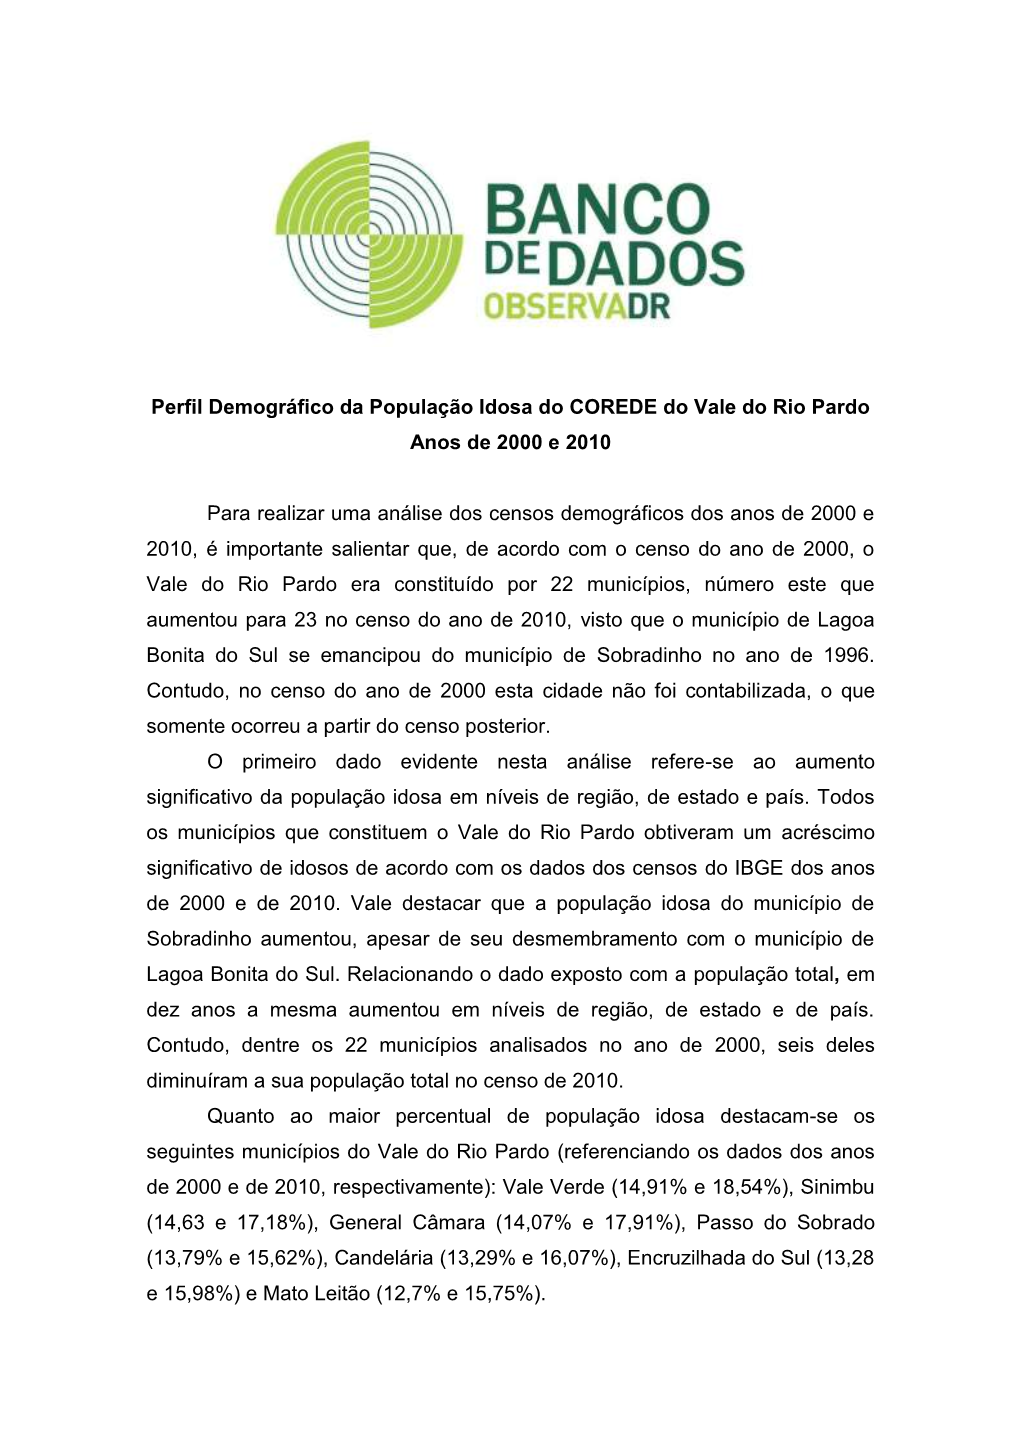 Perfil Demográfico Da População Idosa Do COREDE Do Vale Do Rio Pardo Anos De 2000 E 2010